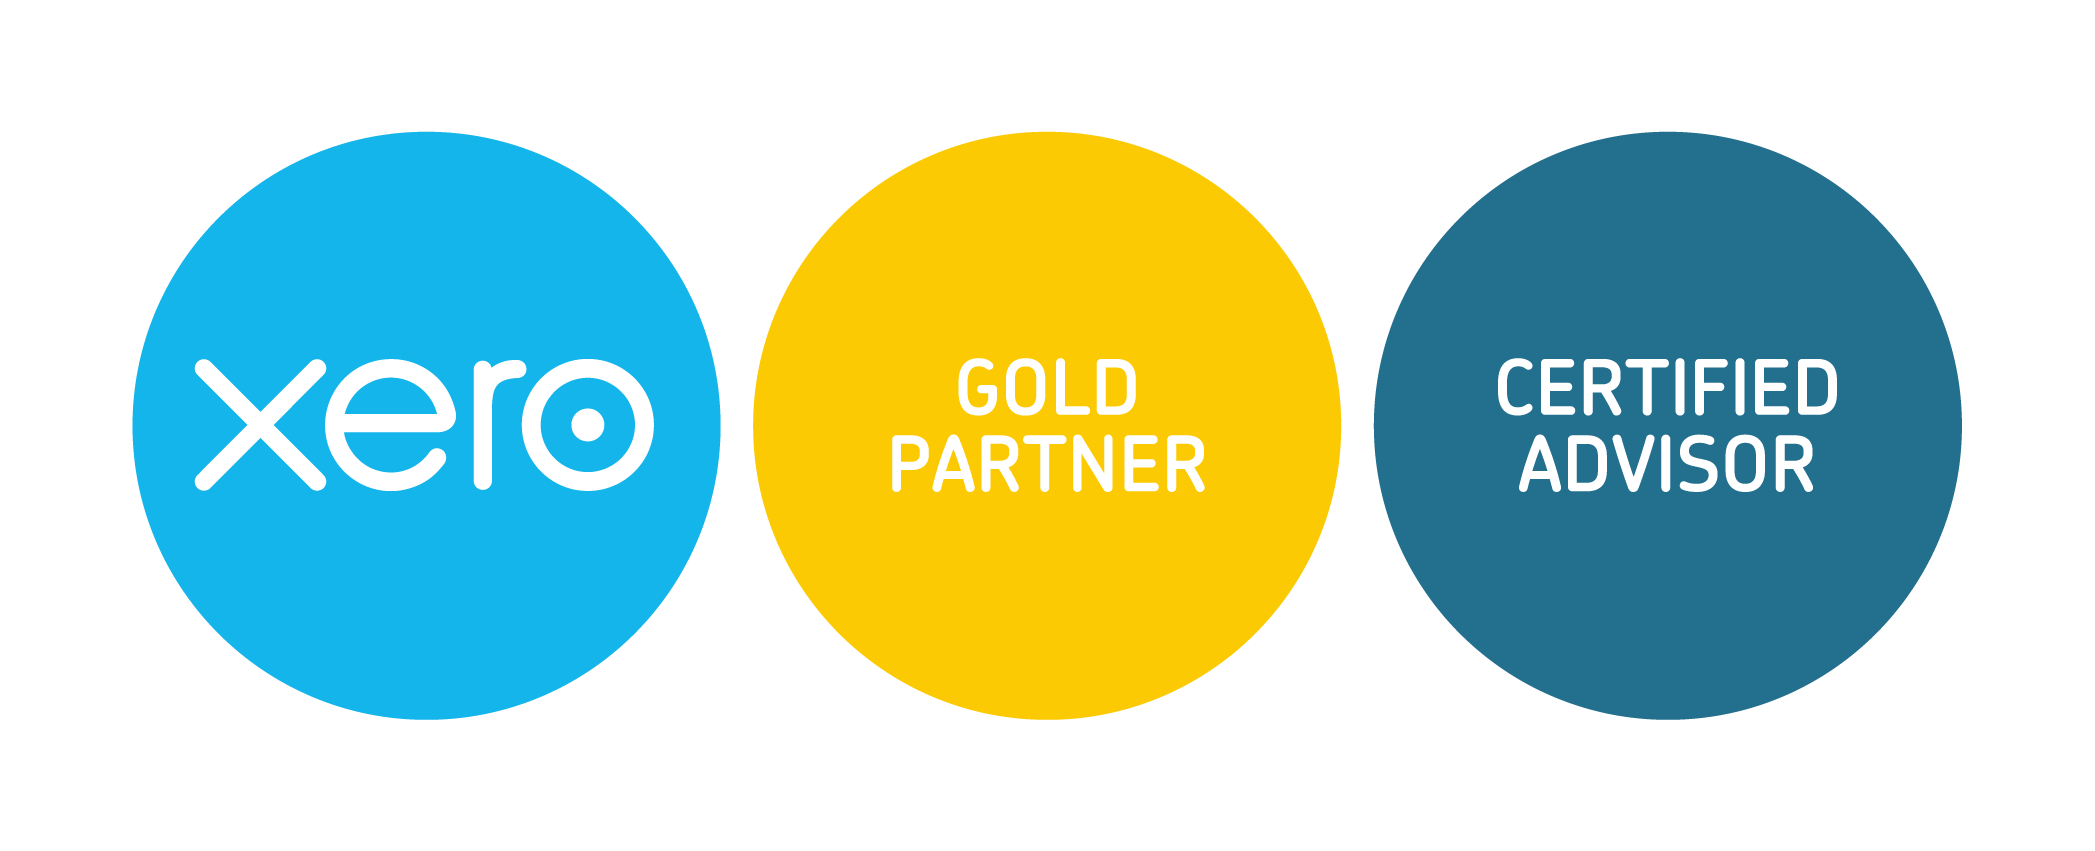 Logo - Xero Gold Partner and Certified Adviser